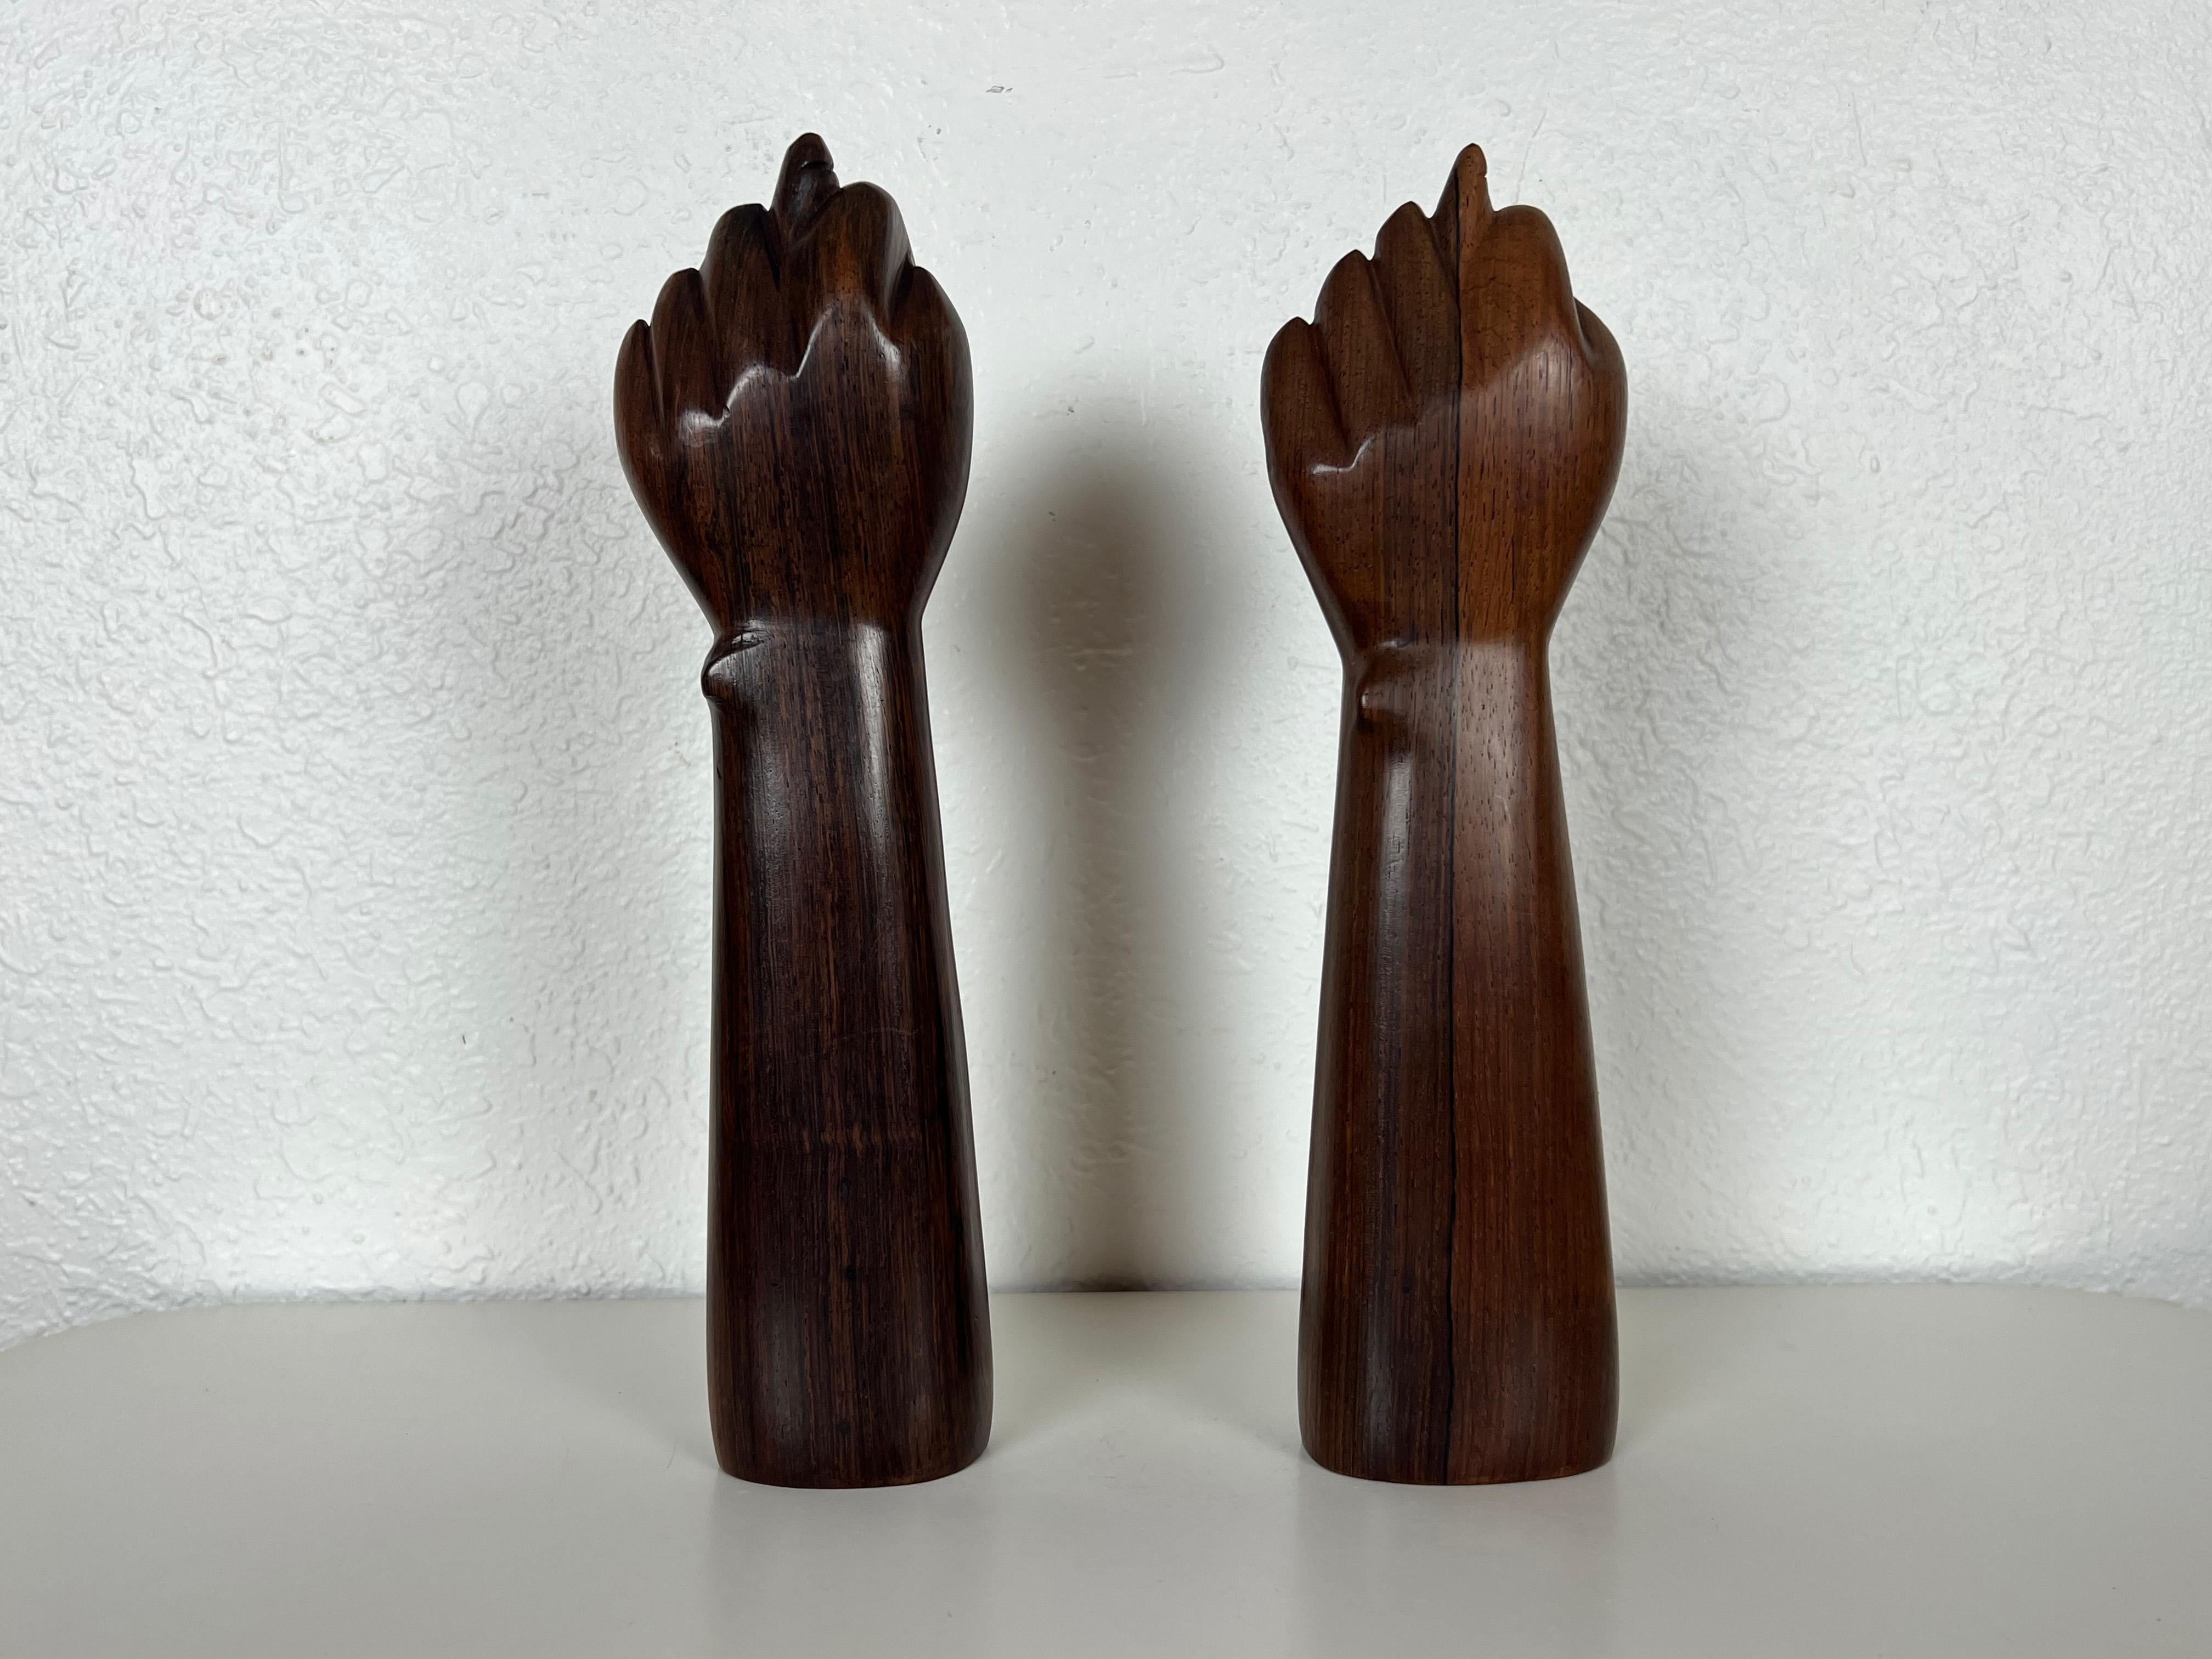 Brazilian Jacaranda Rosewood Hand Sculptures by Jac-Arte - a Pair 4